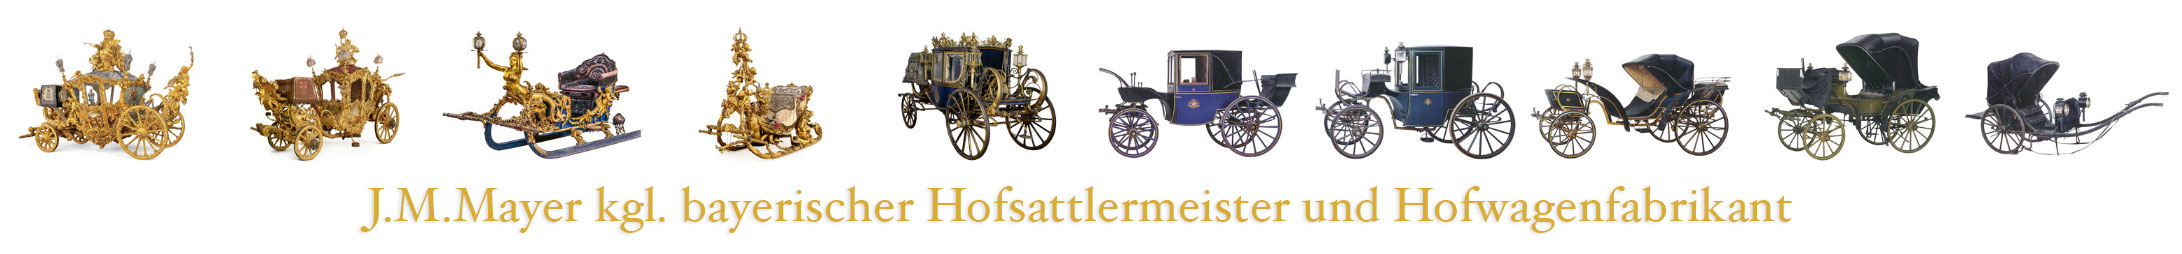 I.M. Hofsattler und Hofwagenfabrikant